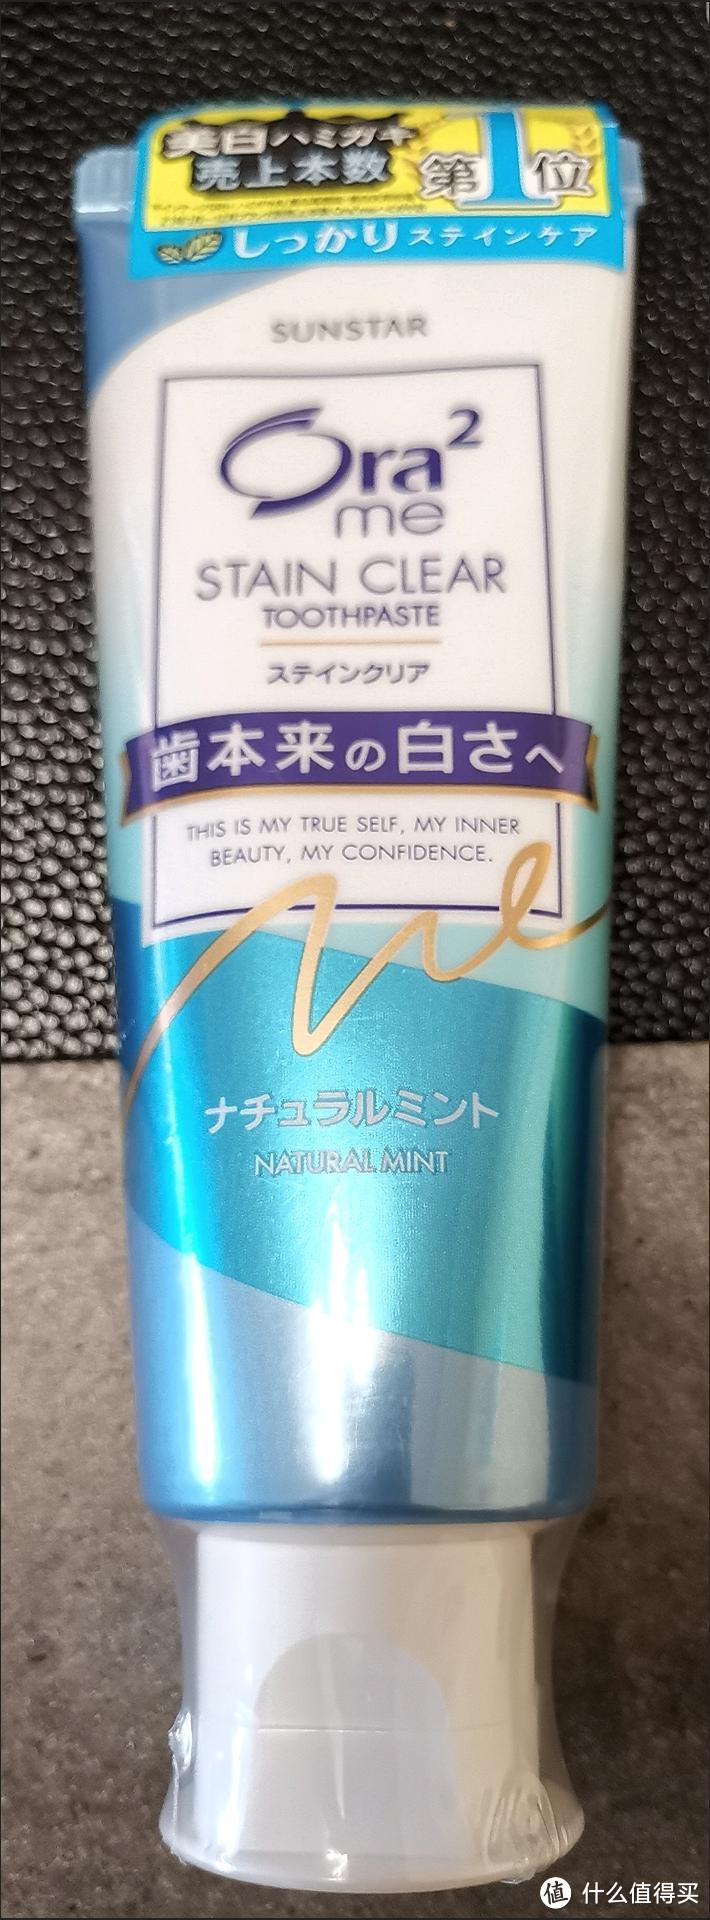 日本原装皓乐齿的牙膏